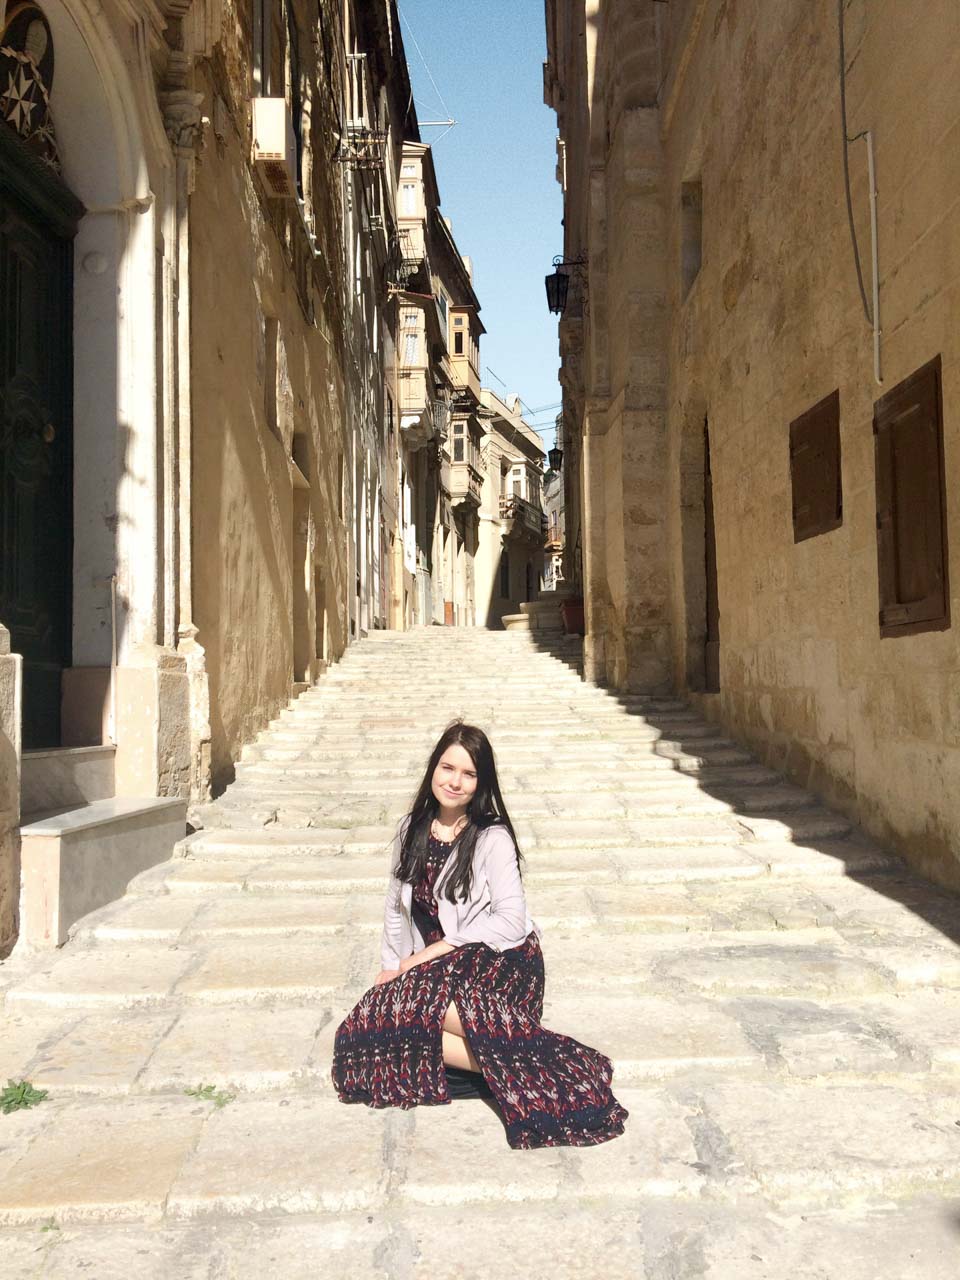 A girl sitting in a traditional street in Birgu, Malta